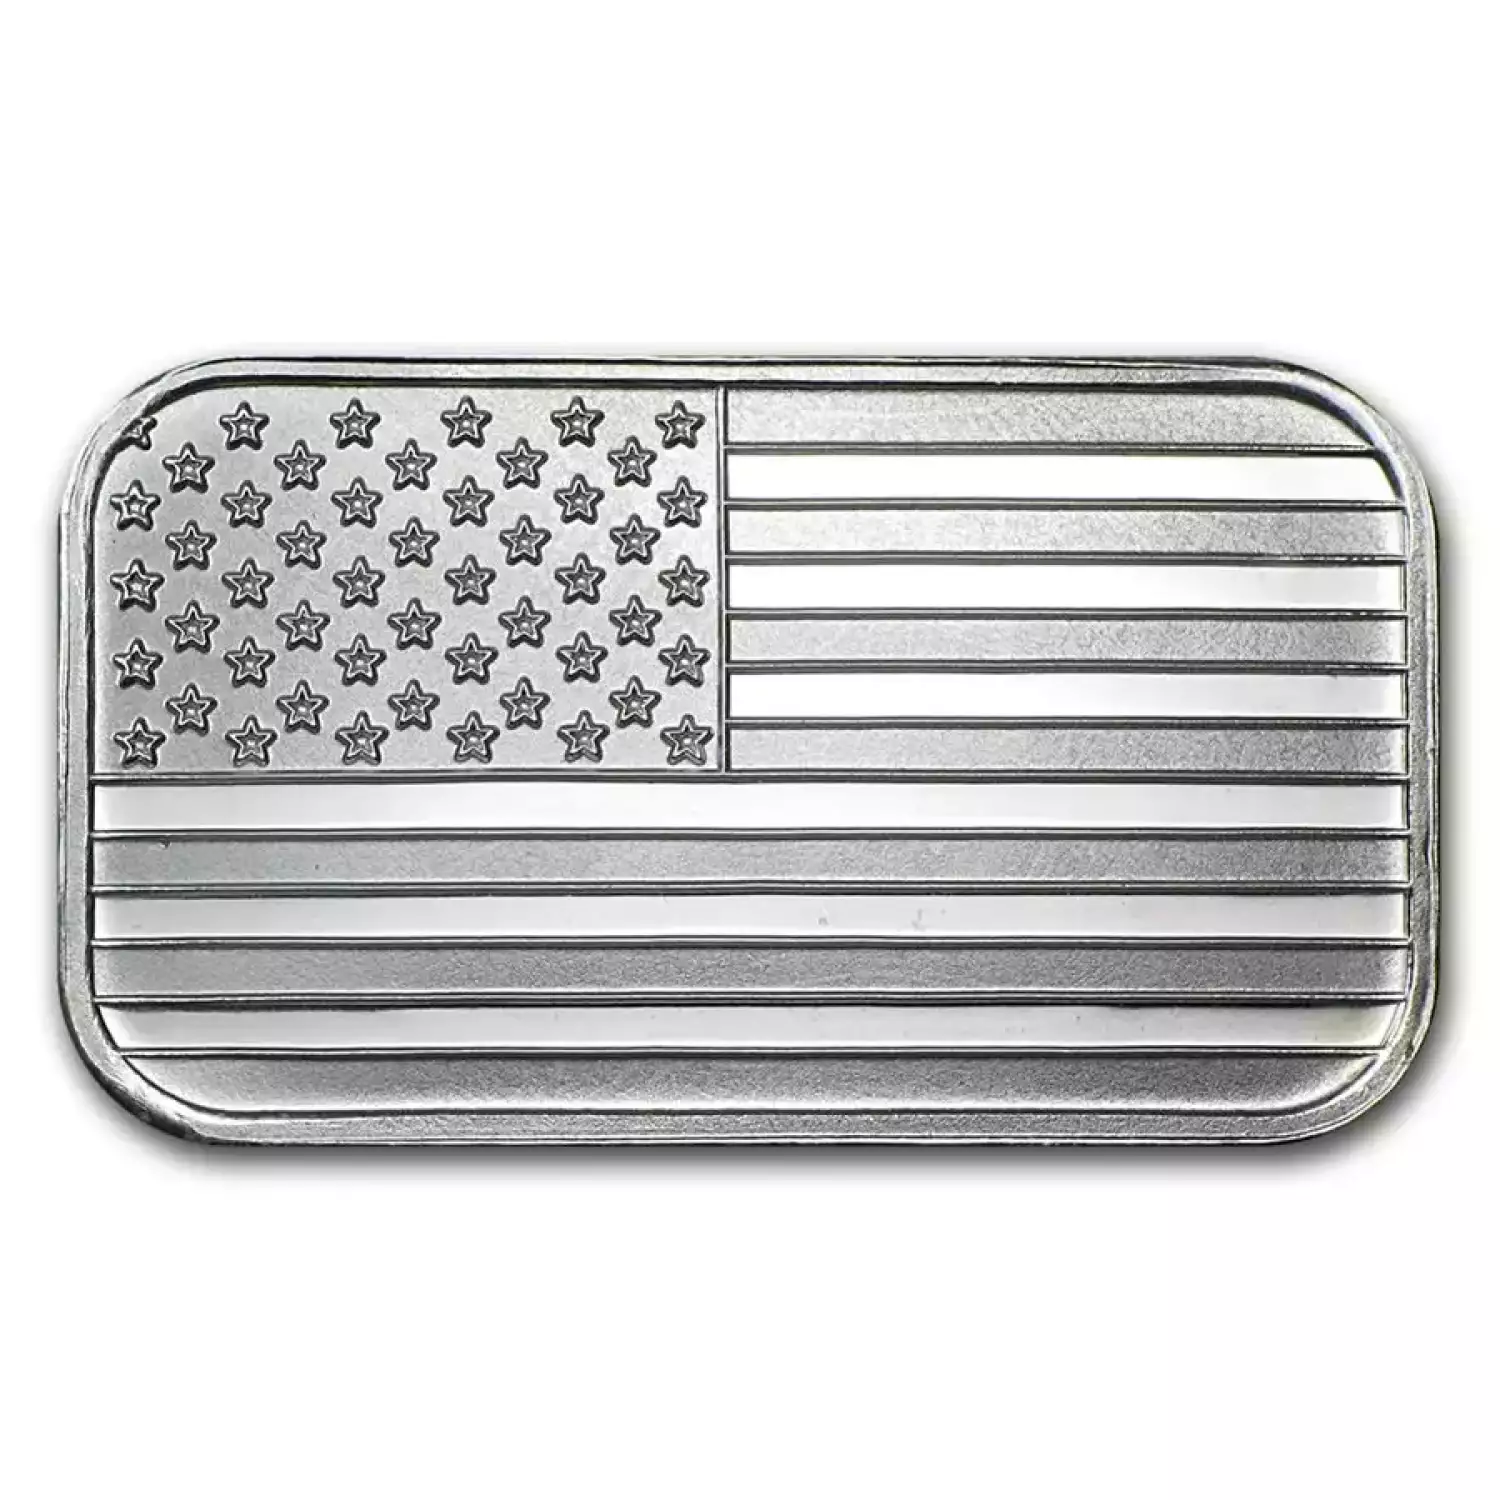 1oz Silver Bar - American Flag